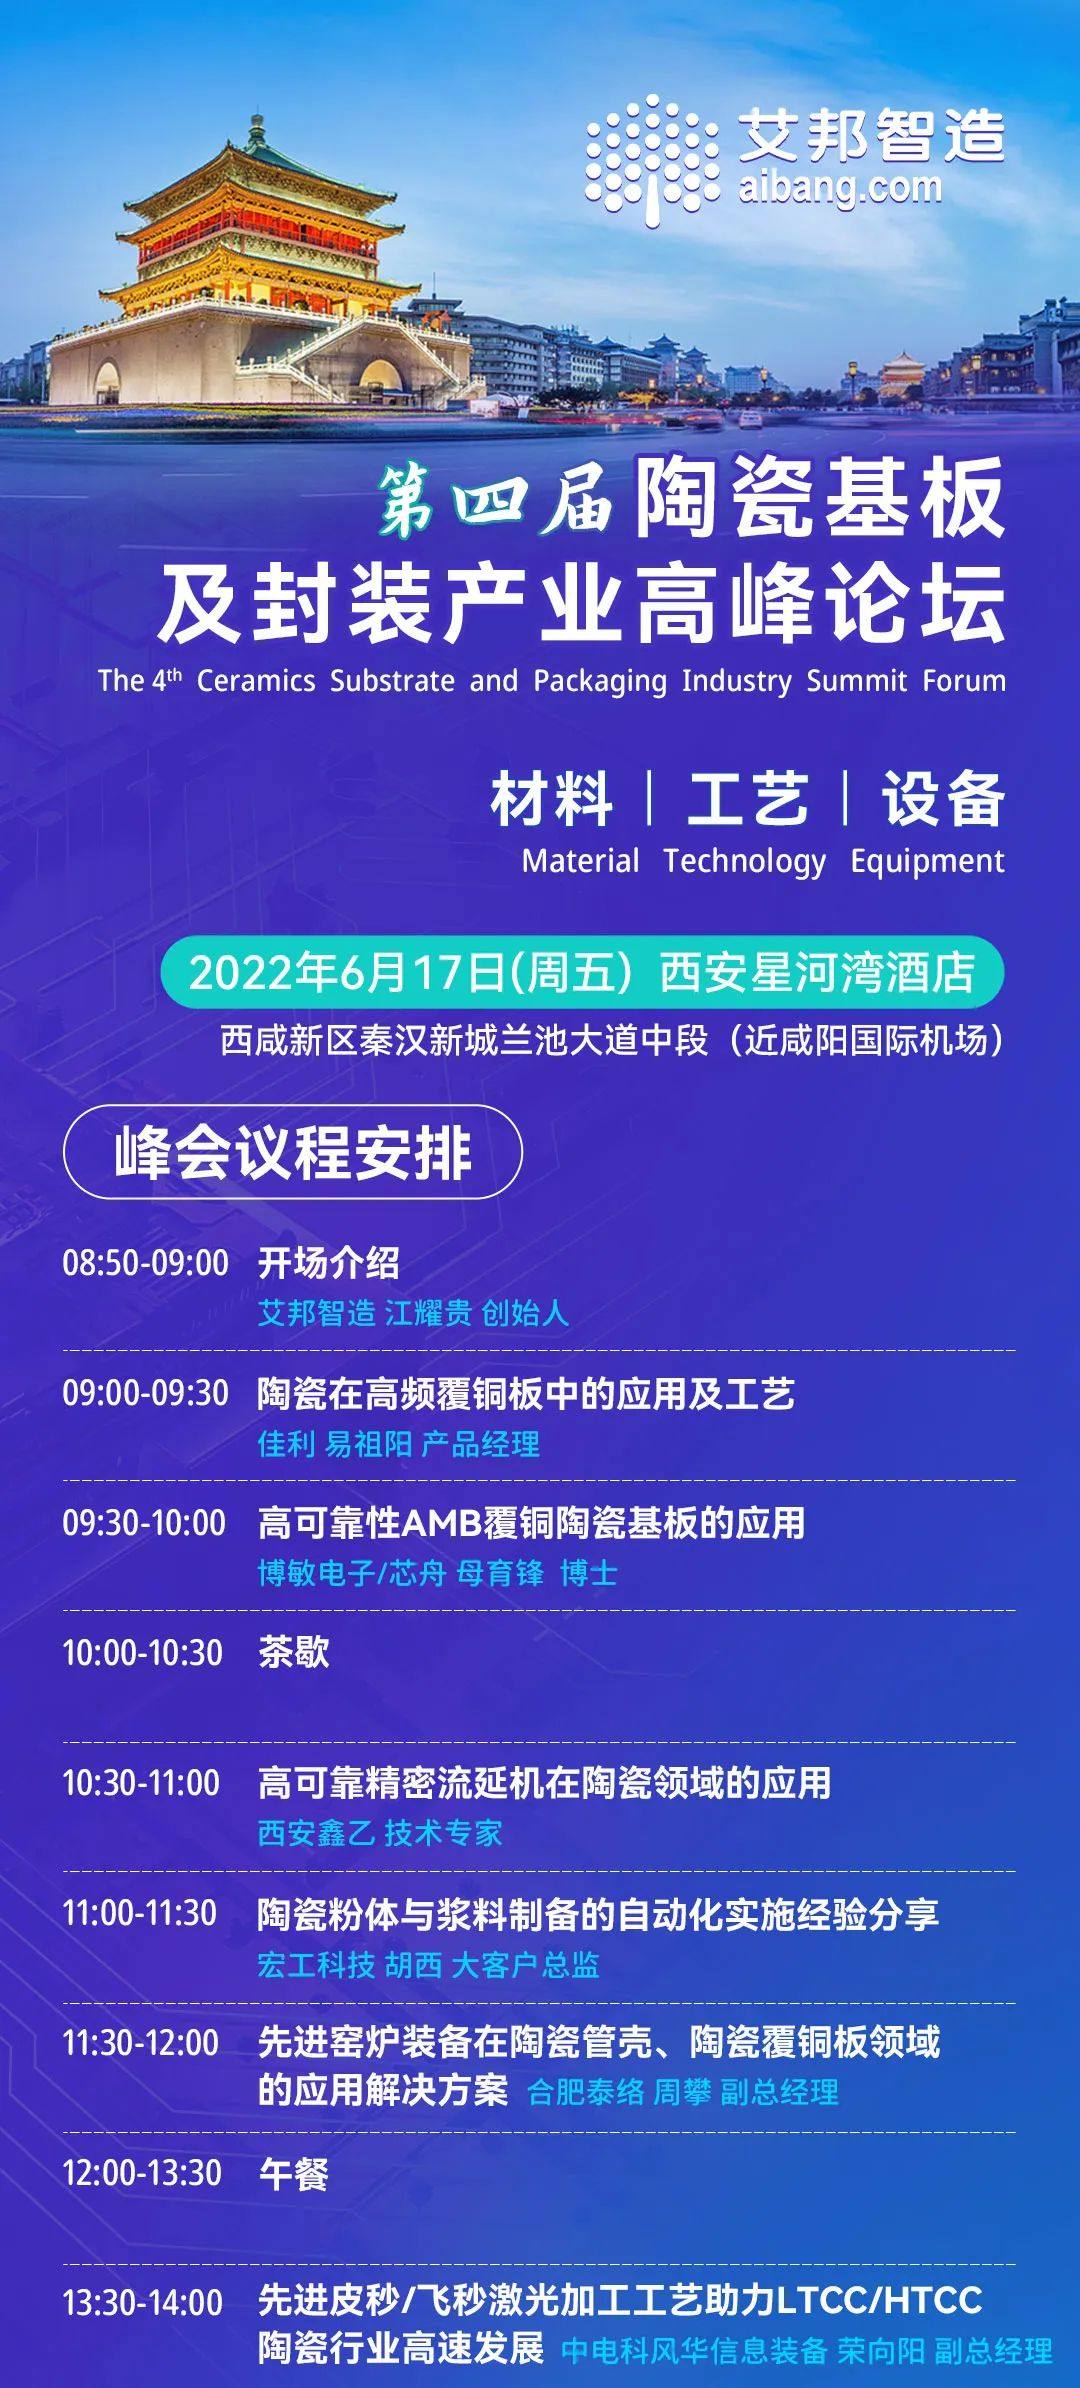 建宇网印将出席第四届陶瓷基板及封装产业高峰论坛并做主题演讲